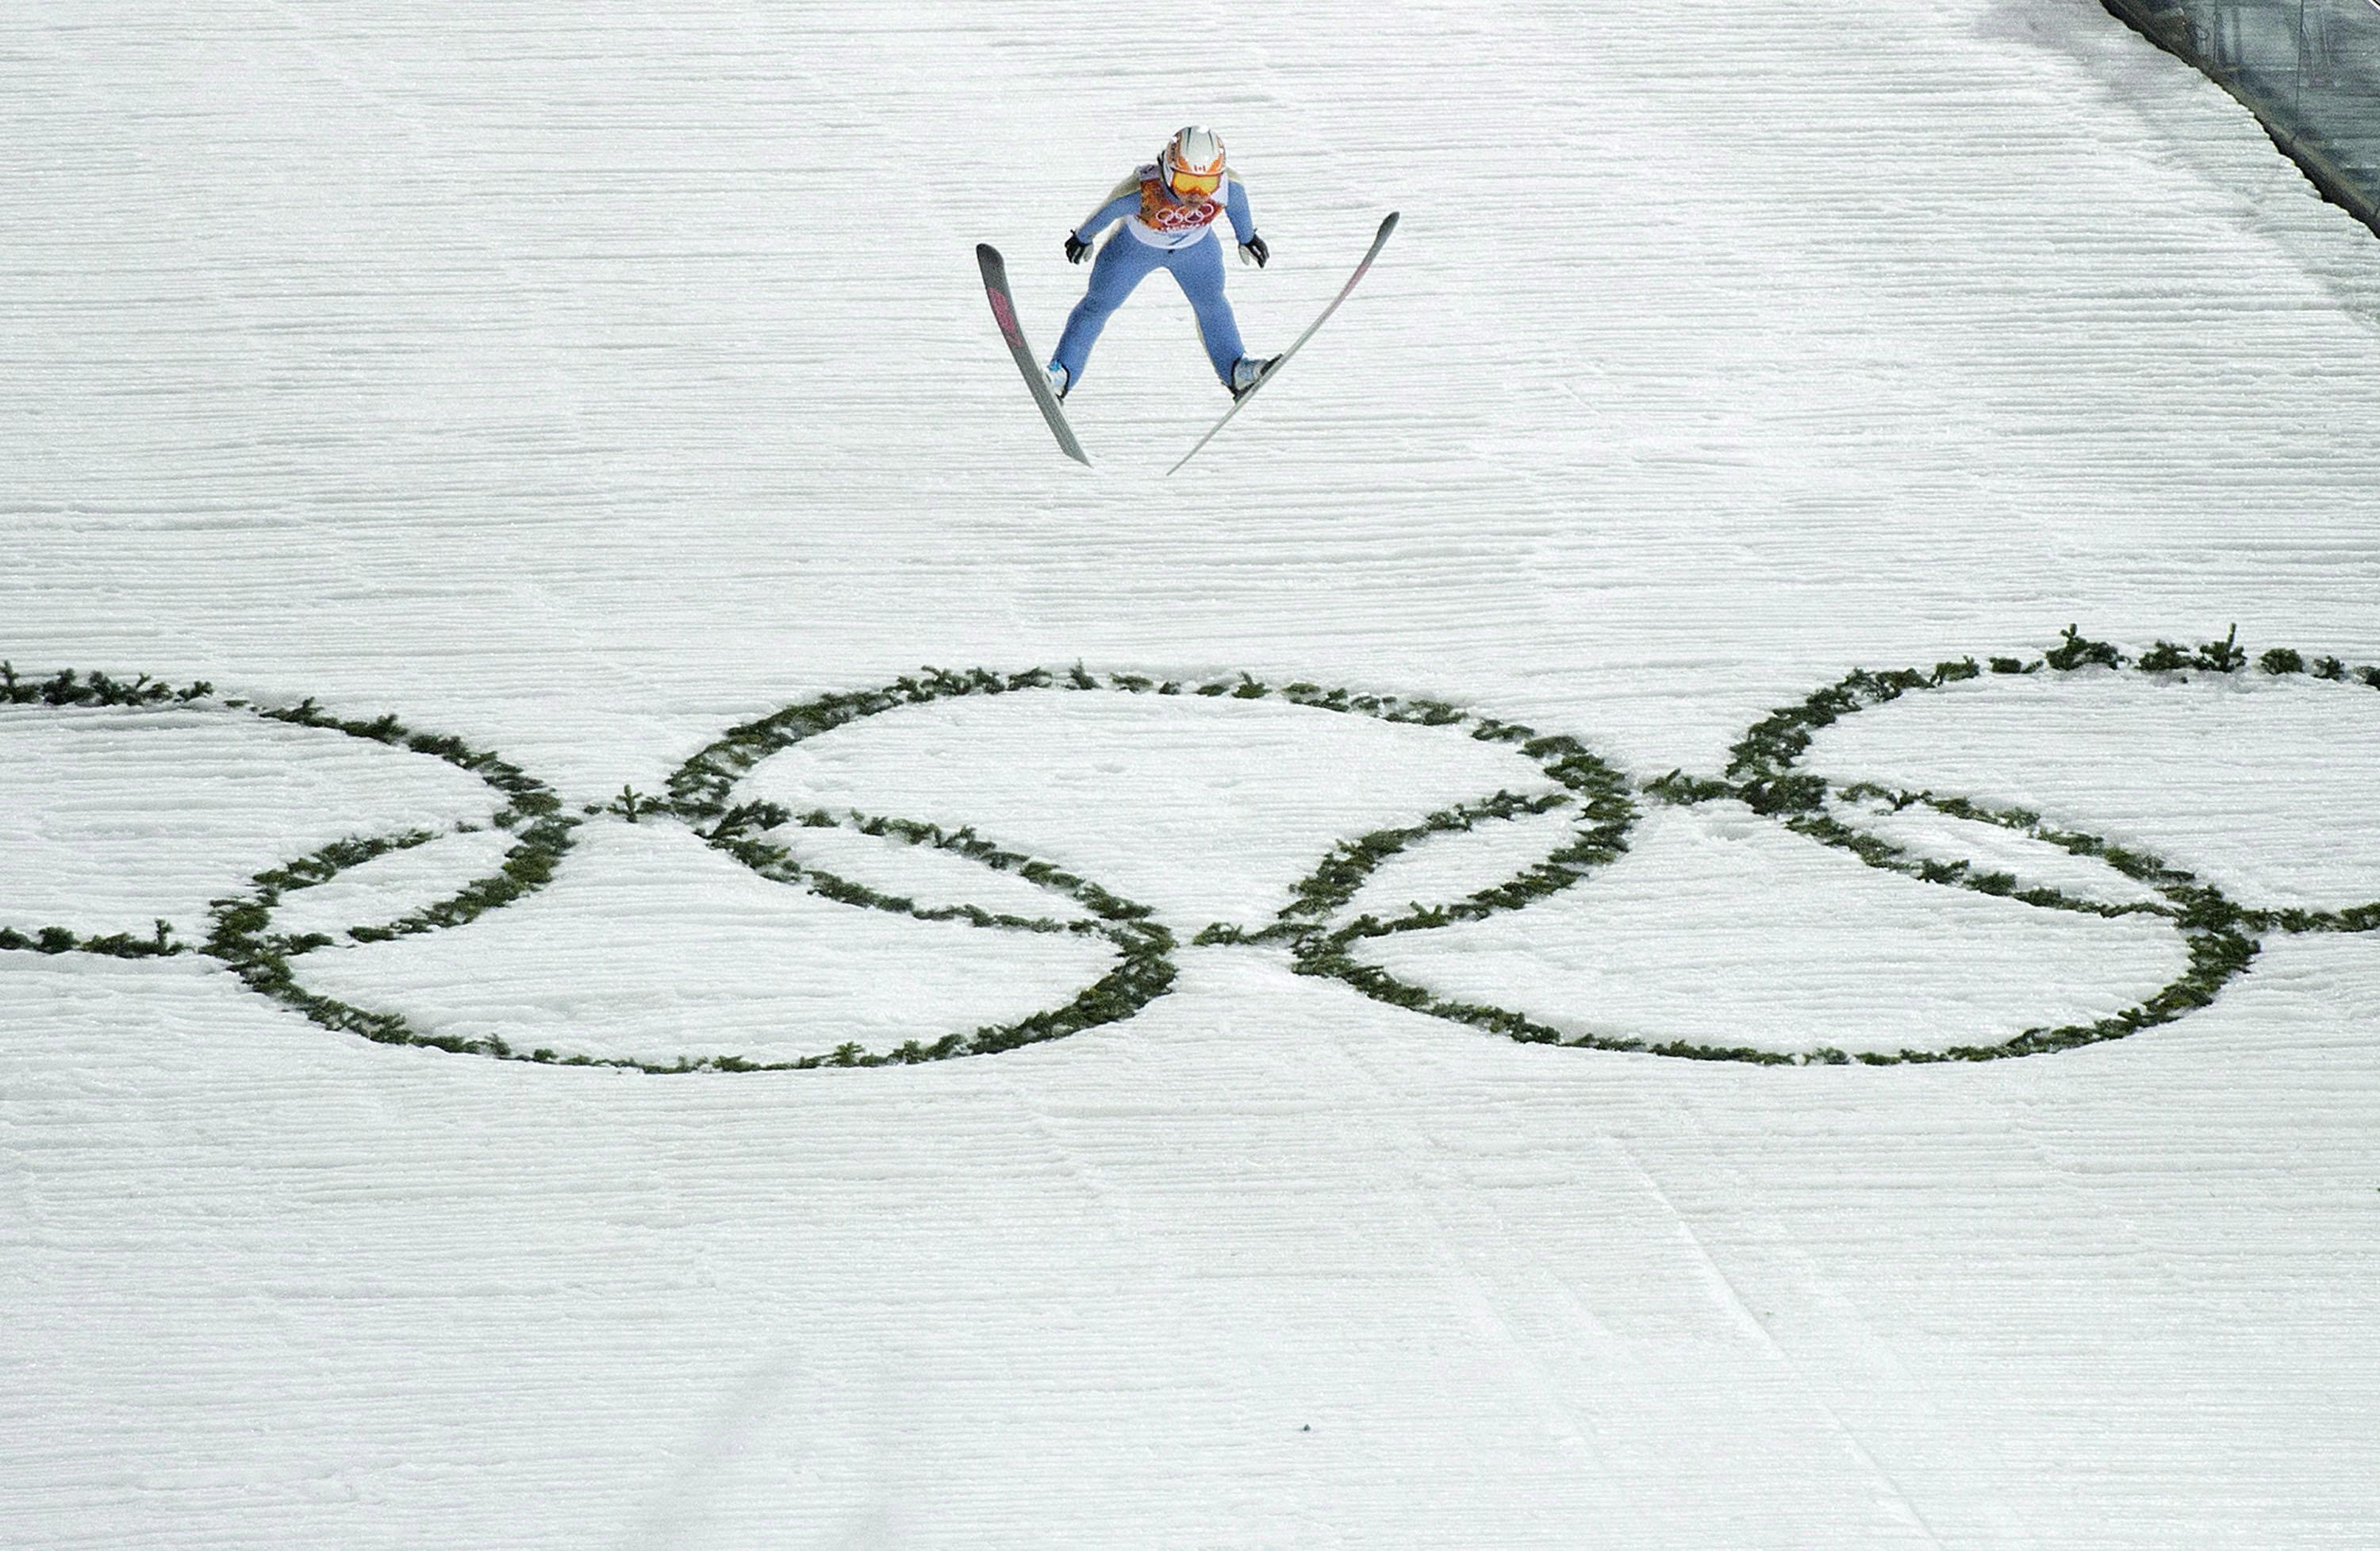 Atsuko Tanaka d'Équipe Canada lors de l'épreuve de saut à ski féminin des Jeux olympiques de Sotchi à Krasnaya Polyana, en Russie, le 11 février 2014. (Photo : La Presse canadienne/Nathan Denette)